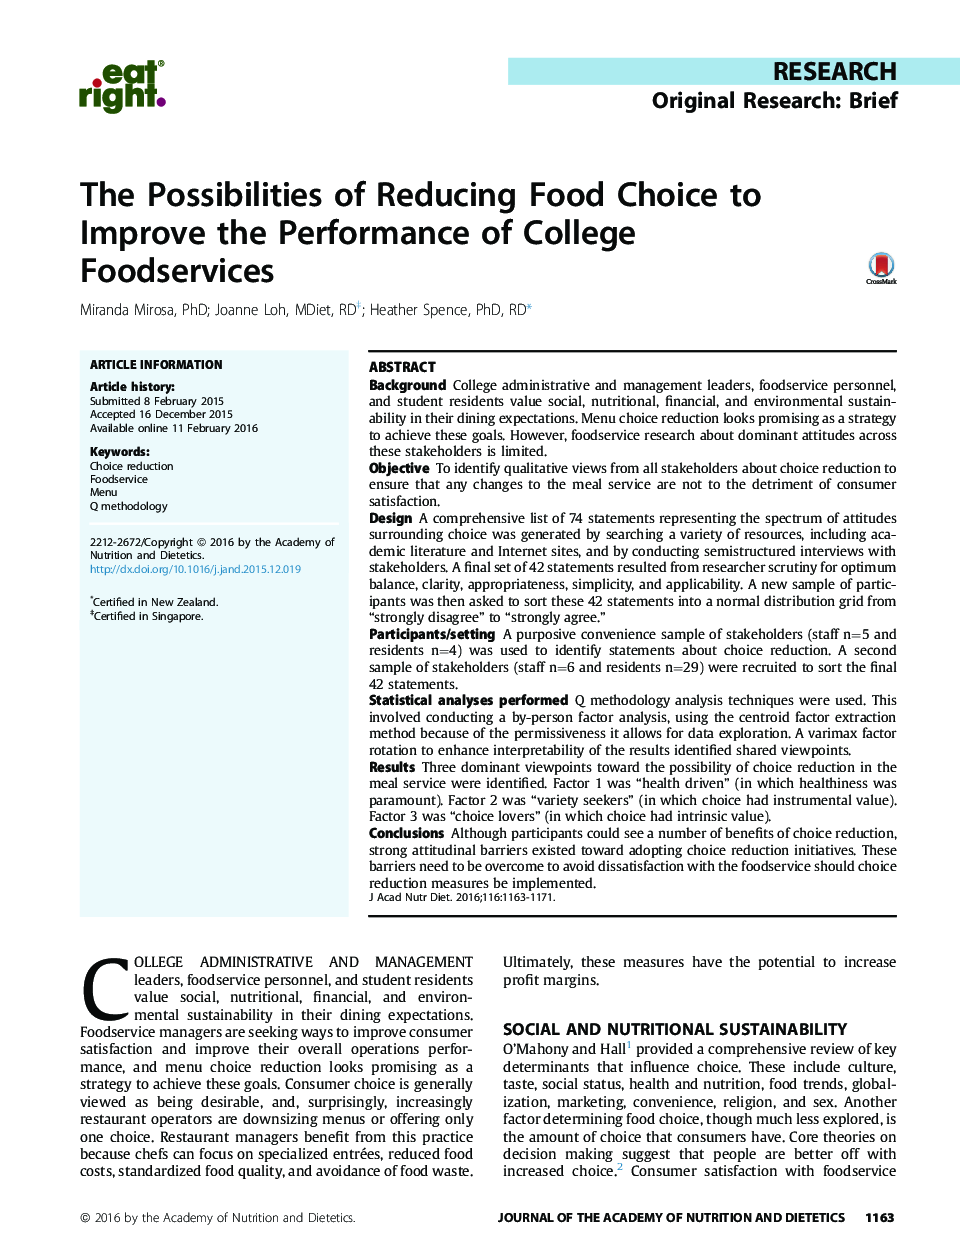 تحقیقات تحقیقاتی: گزینه های کمینه انتخاب غذایی برای بهبود عملکرد کالاهای غذایی کالج 